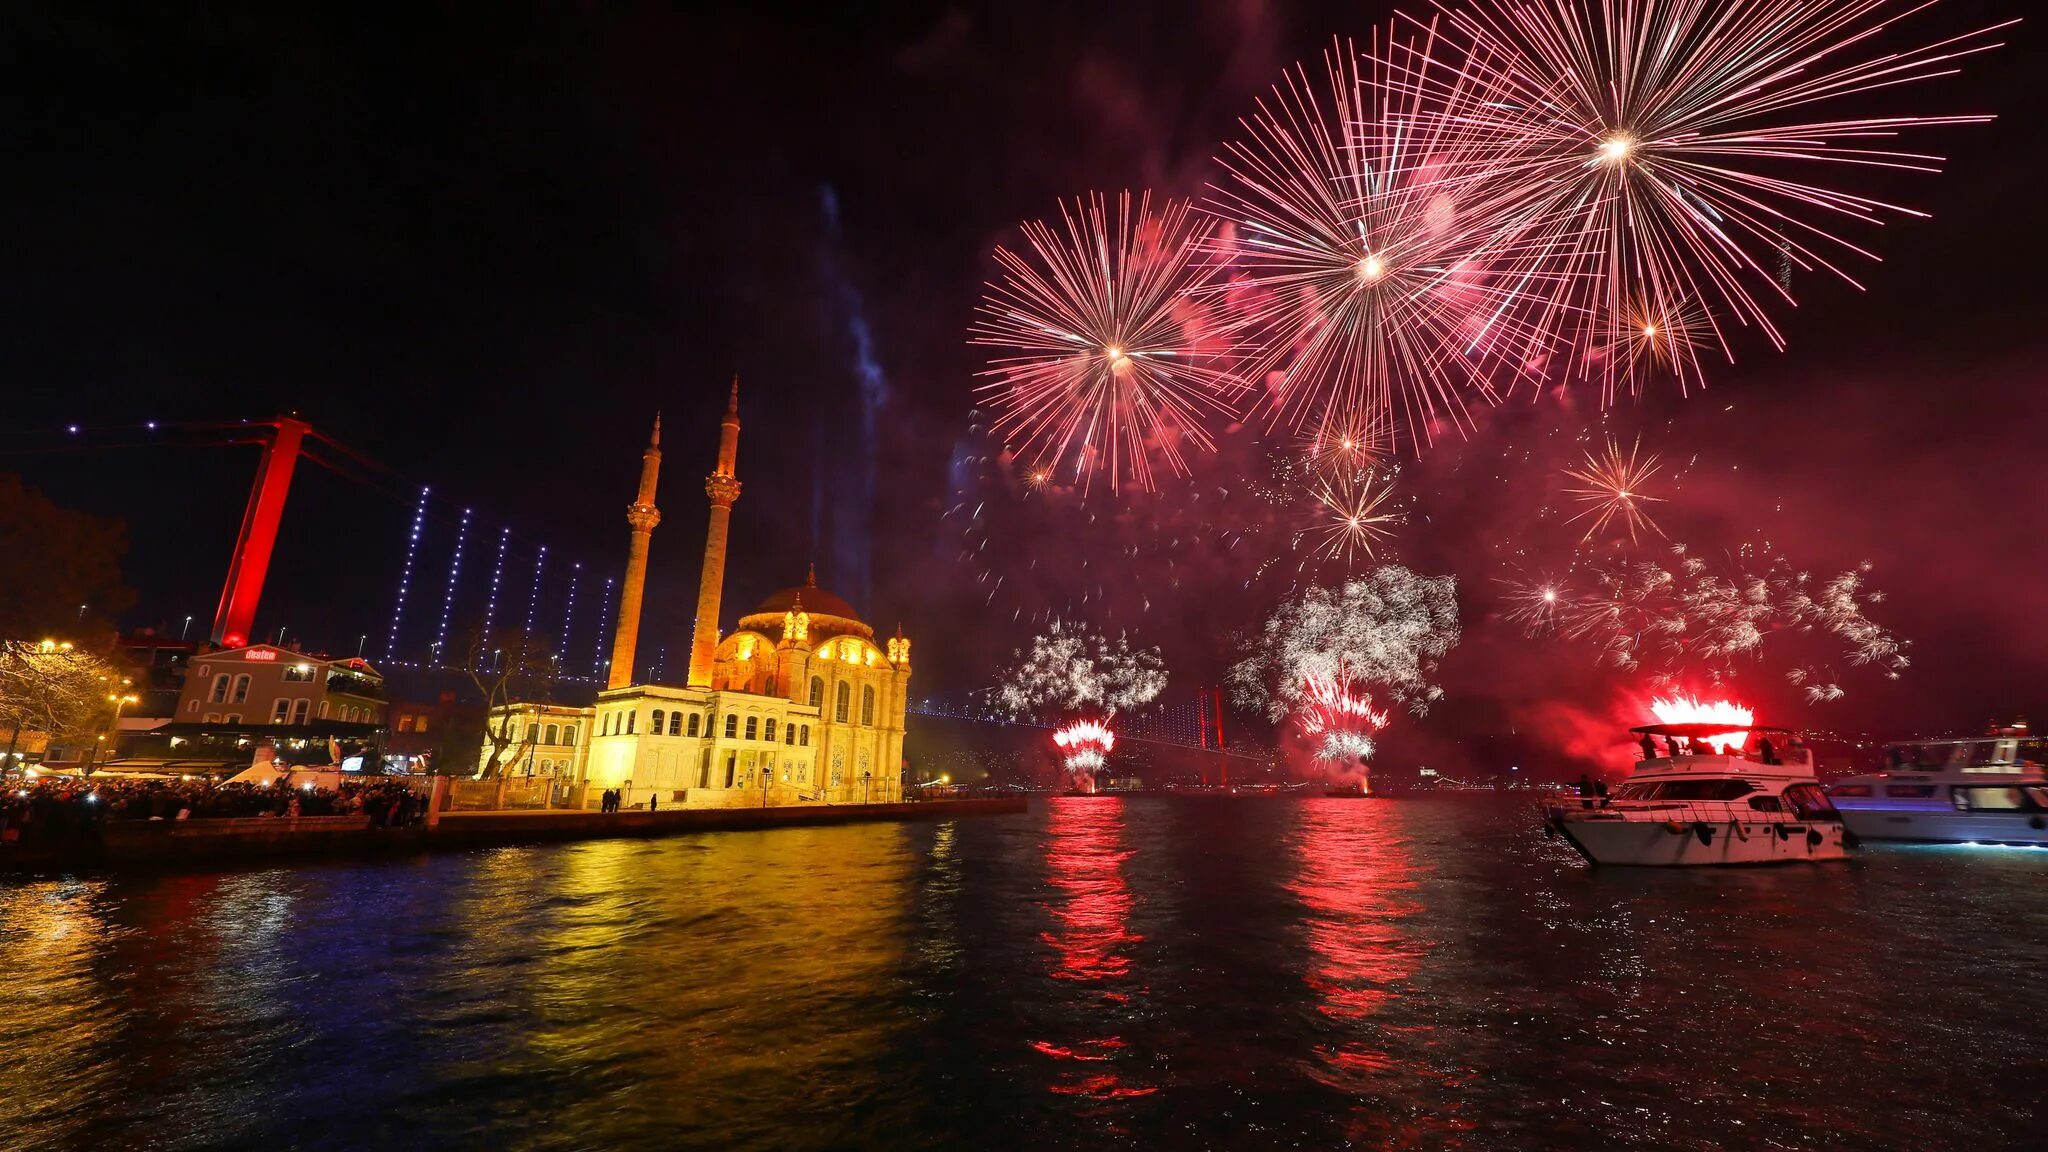 Turkey new. Стамбул новый год 2023 салют. Ортакёй Стамбул салют. Новогодний салют в Стамбуле. Новый год в Турции Босфор.